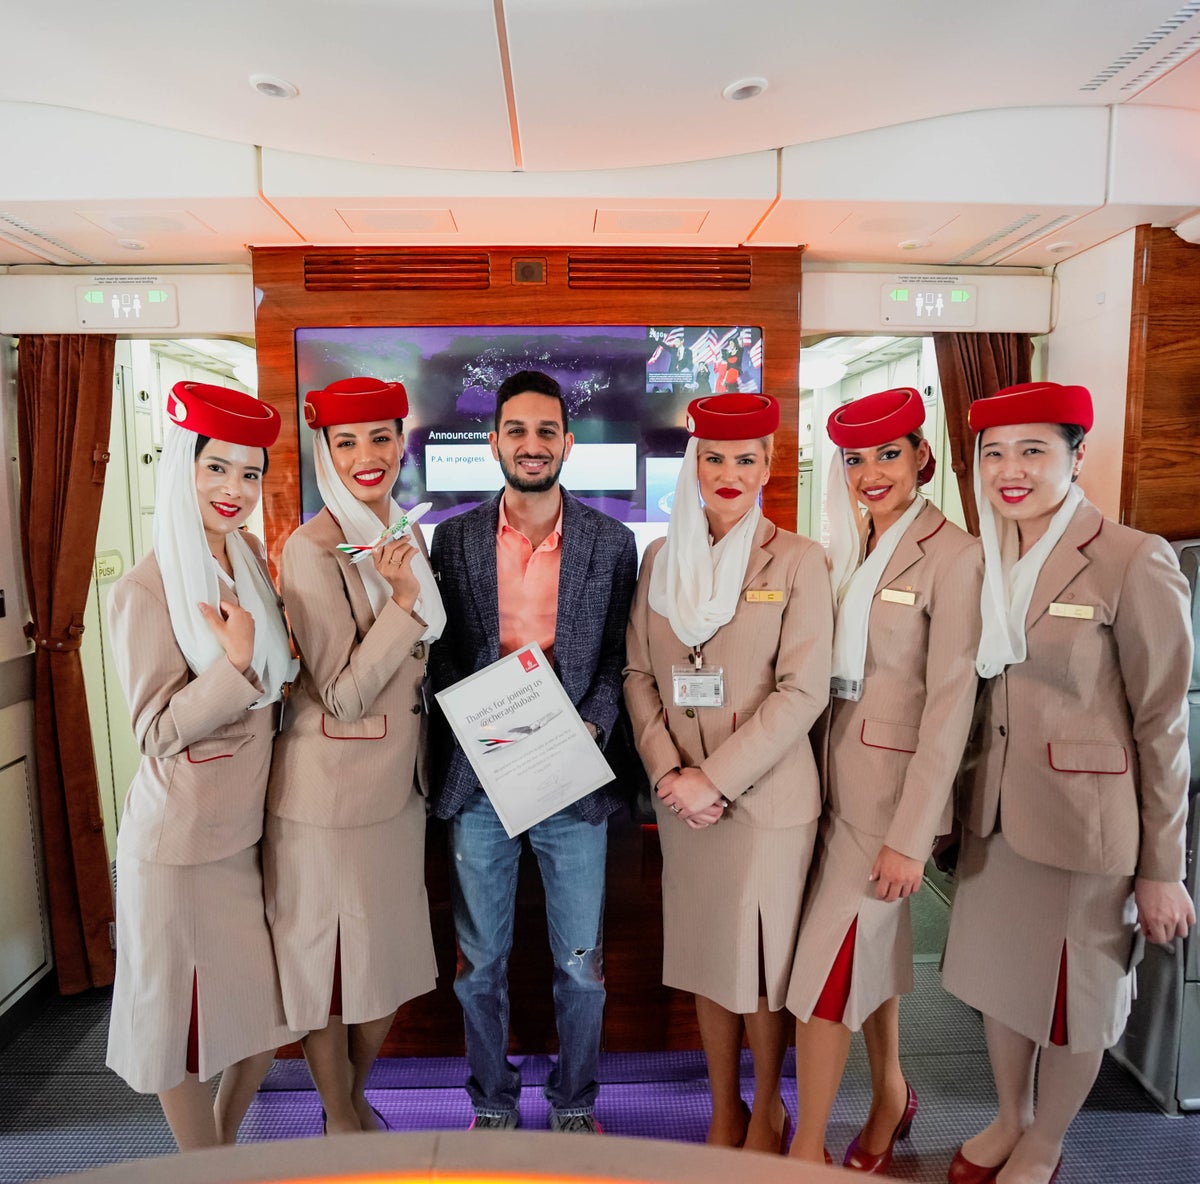 Emirates Inaugural World's Shortest A380 Flight Cherag Dubash